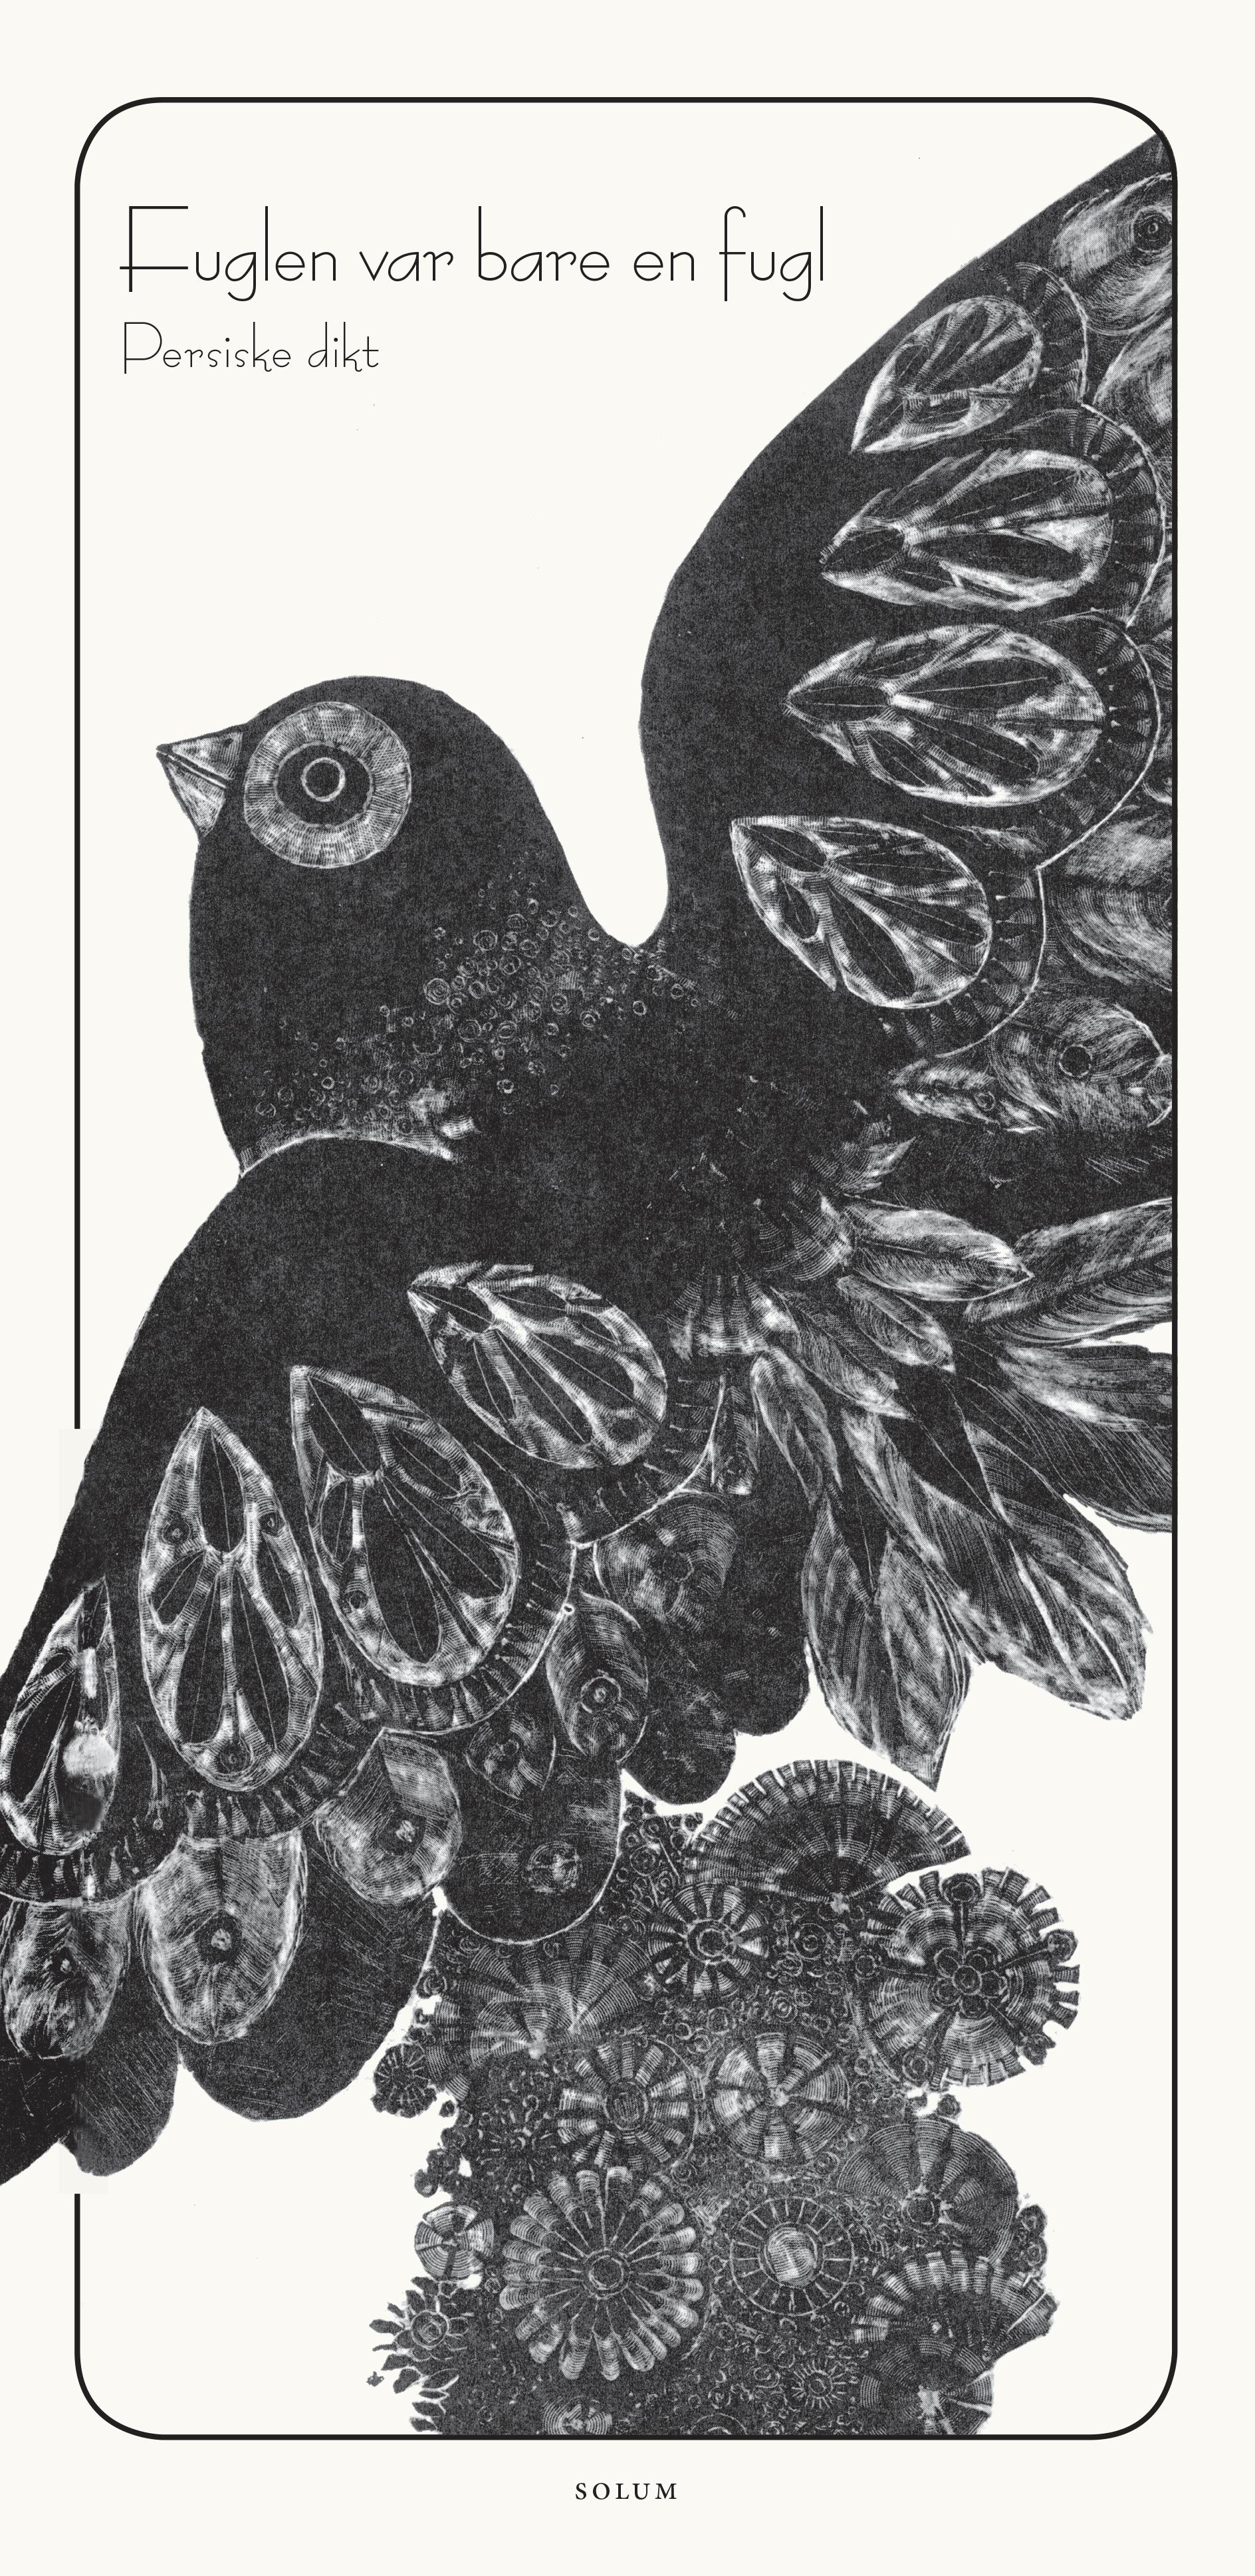 Fuglen var bare en fugl: persiske dikt for barn